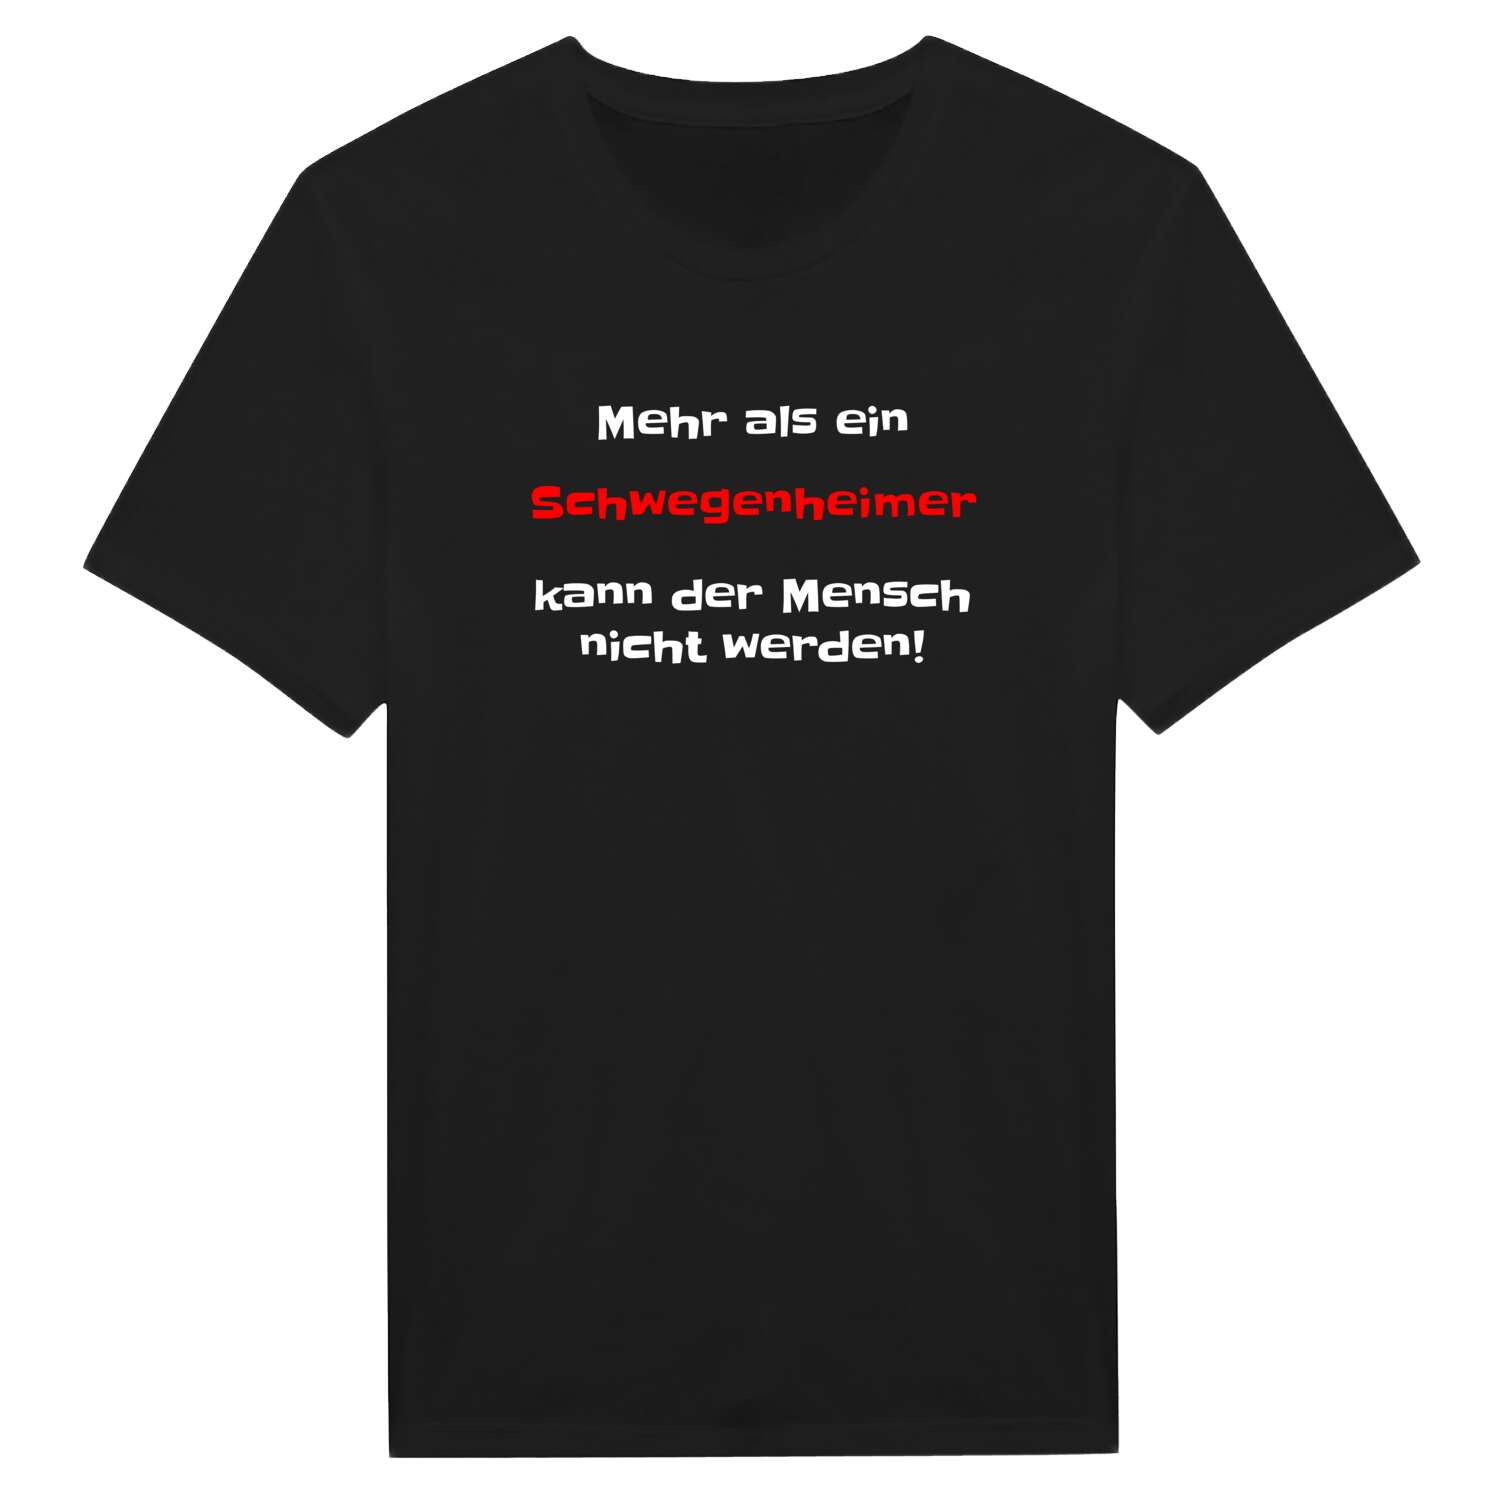 Schwegenheim T-Shirt »Mehr als ein«